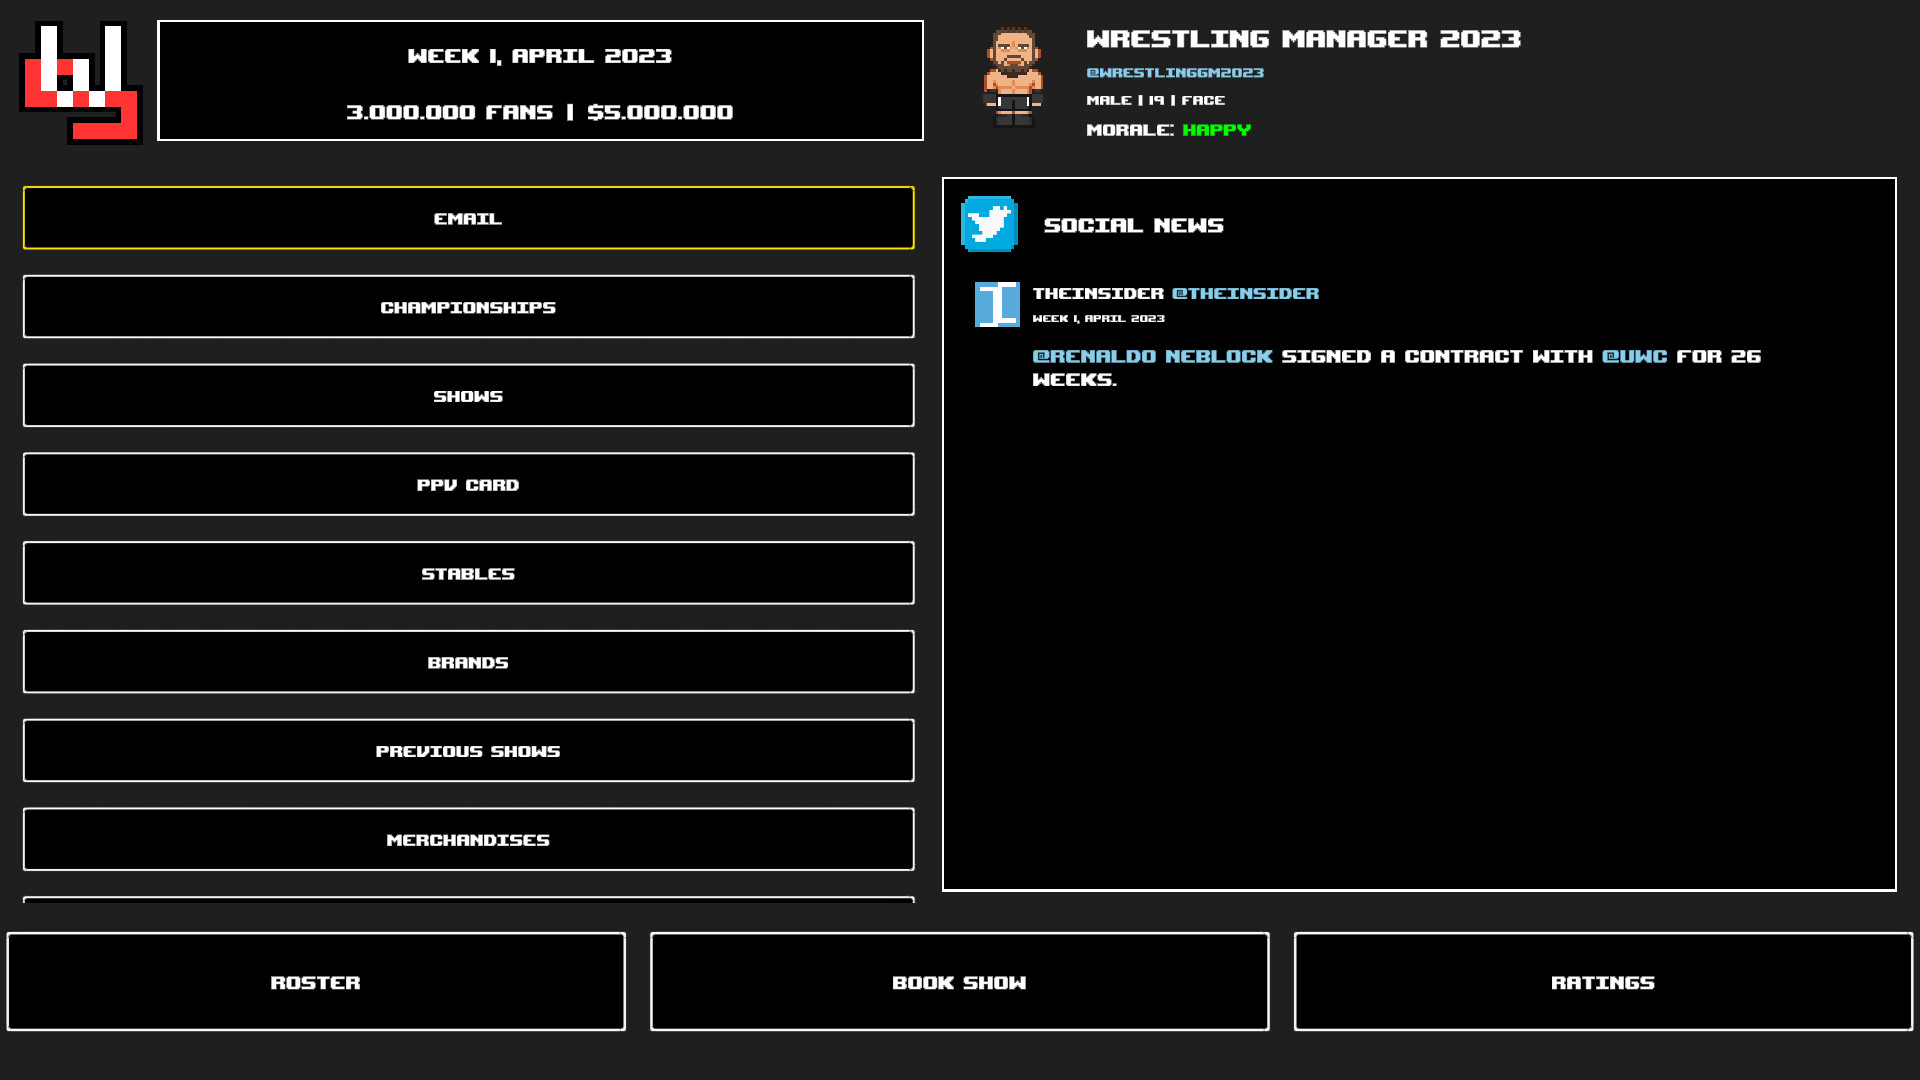 Wrestling Manager 2023 Free Download